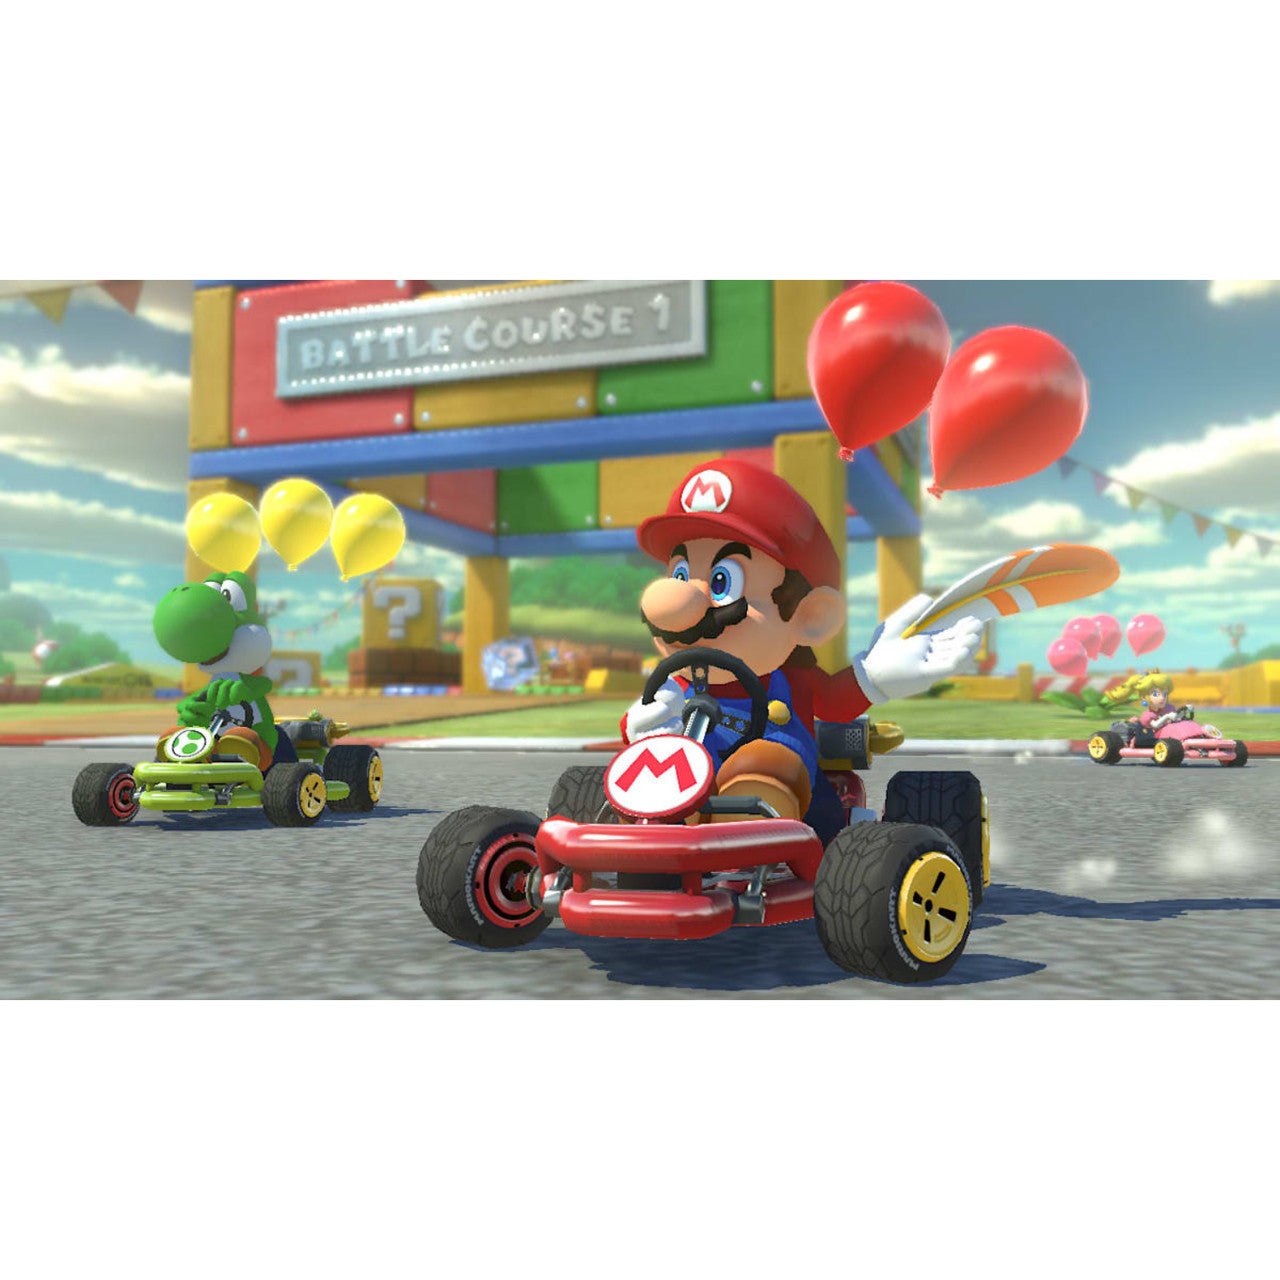 Nintendo - Mario Kart 8 Deluxe - Switch